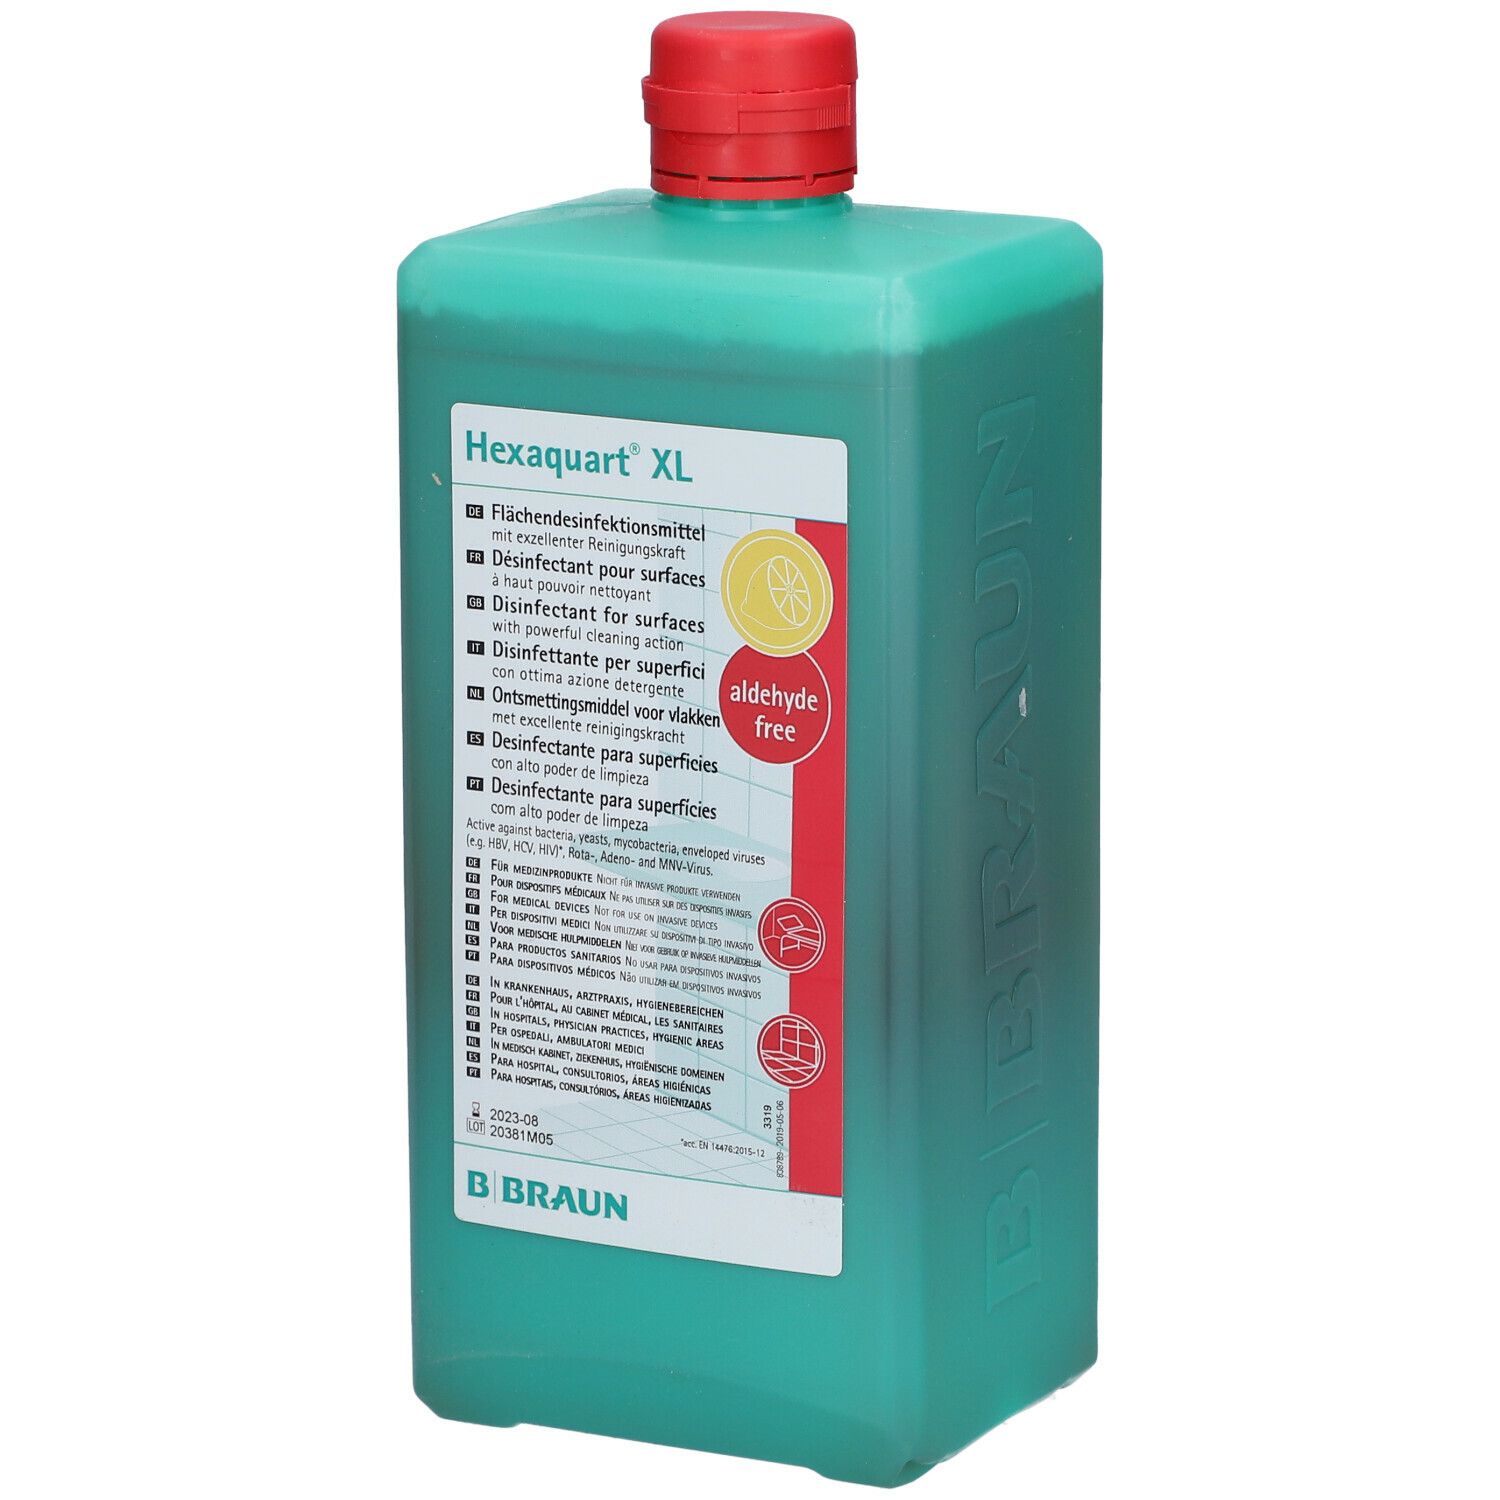 Hexaquart® XL area disinfectant